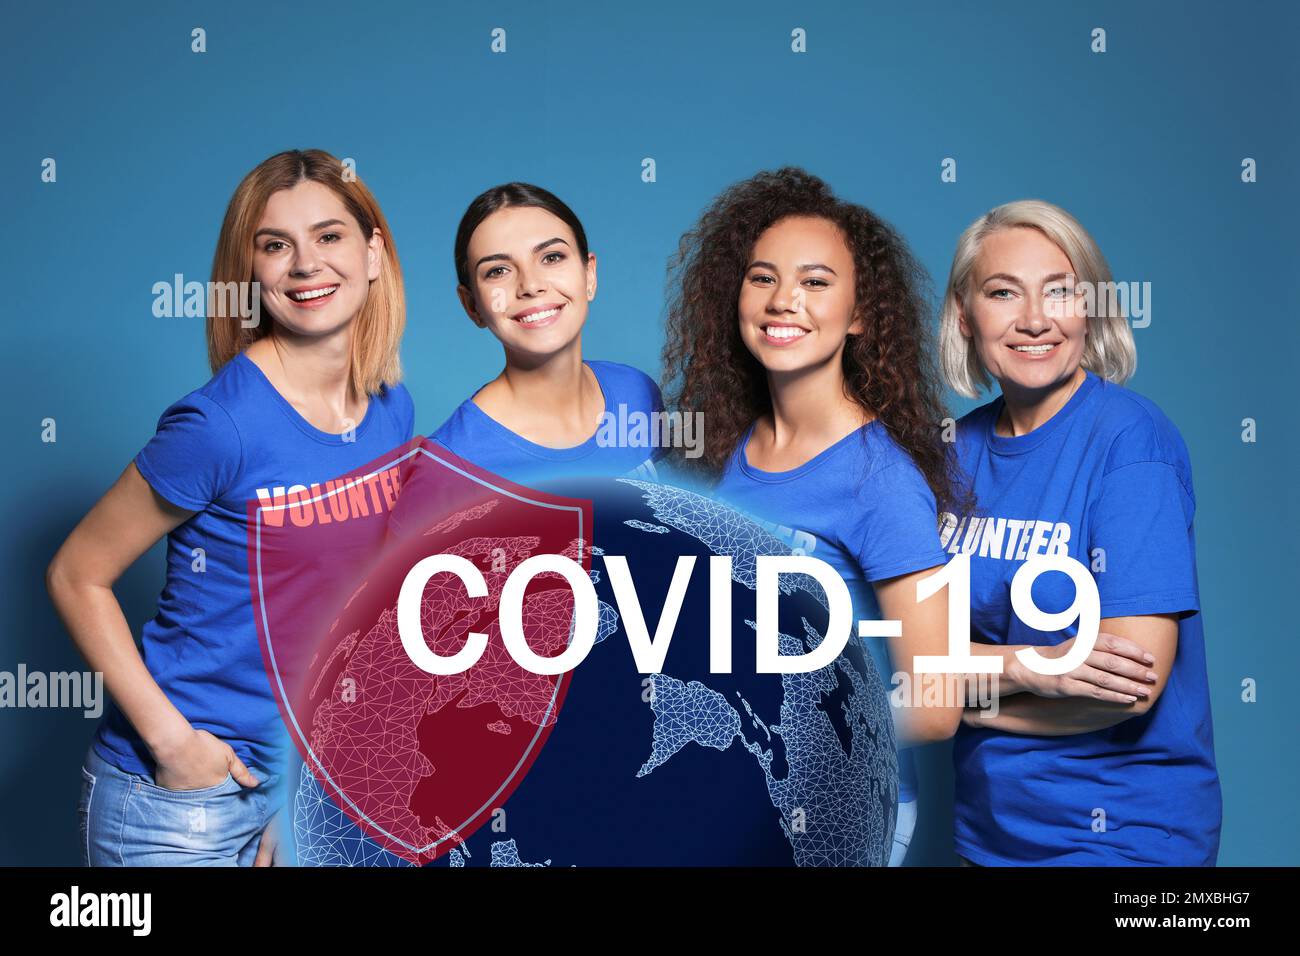 Les bénévoles s'unissent pour aider pendant l'épidémie de COVID-19. Groupe de personnes sur fond bleu, globe et illustrations de bouclier Banque D'Images